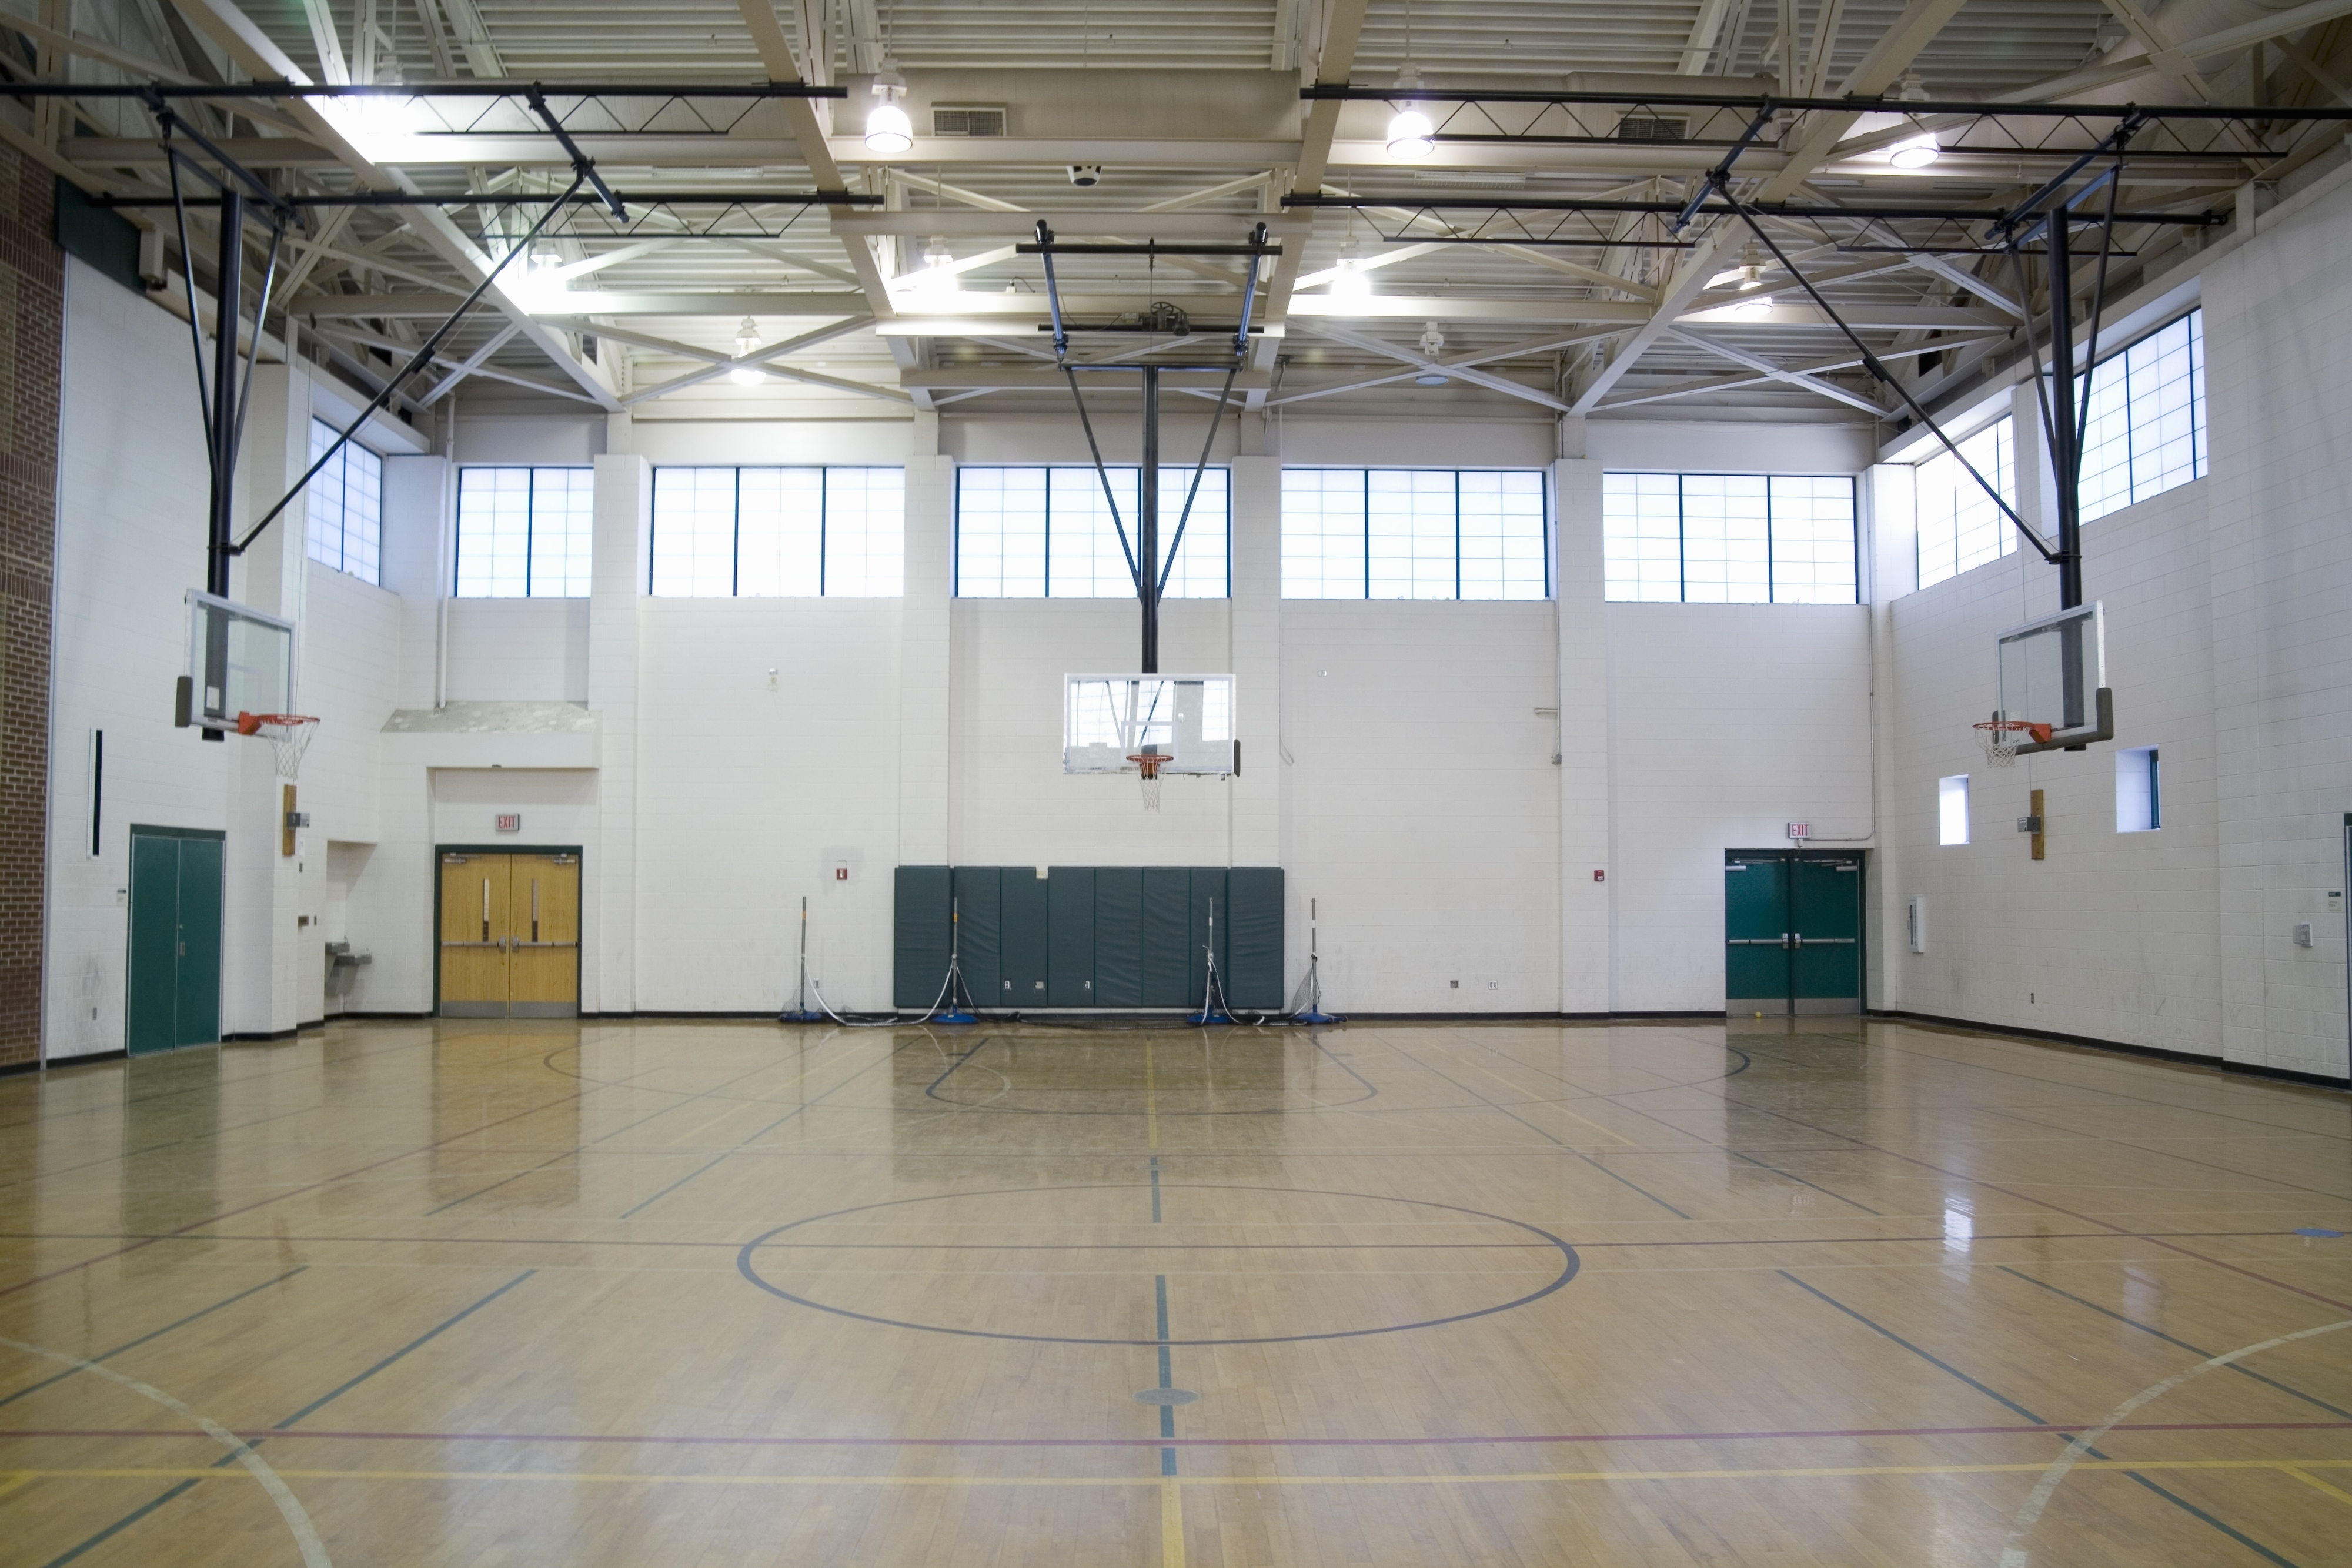 An empty school gym